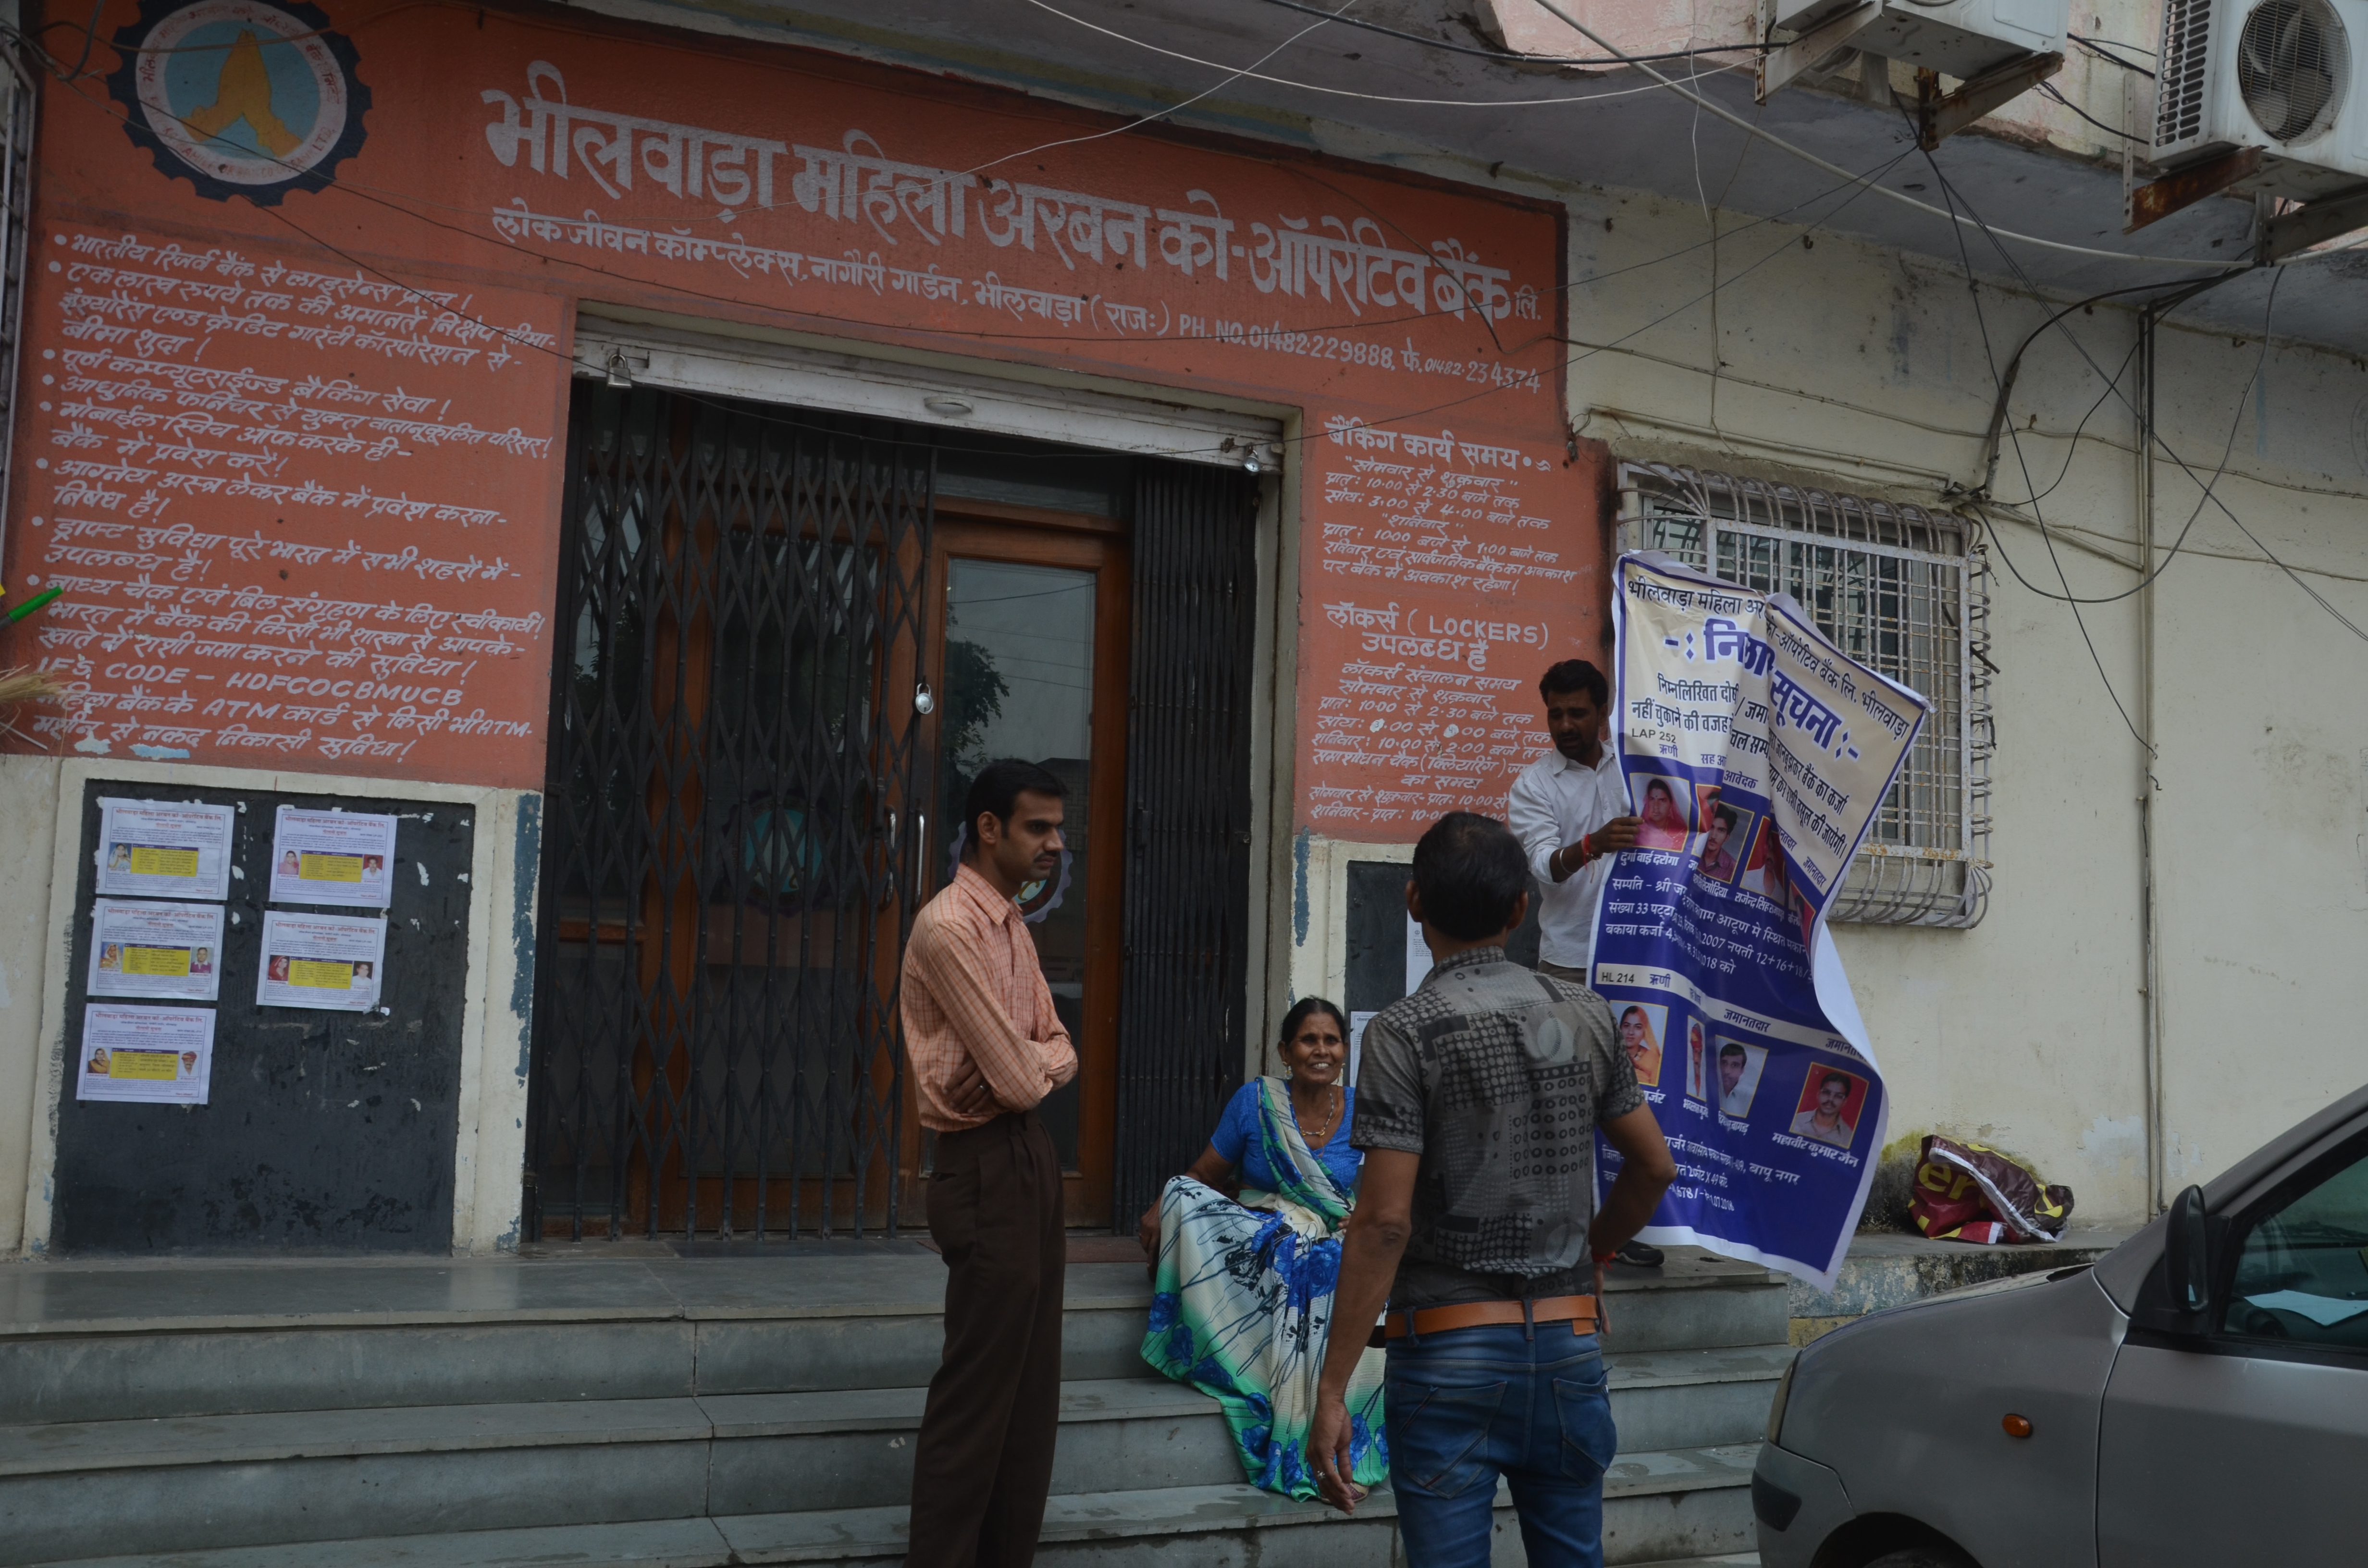 Women Urban Co-operative Bank Case in bhilwara